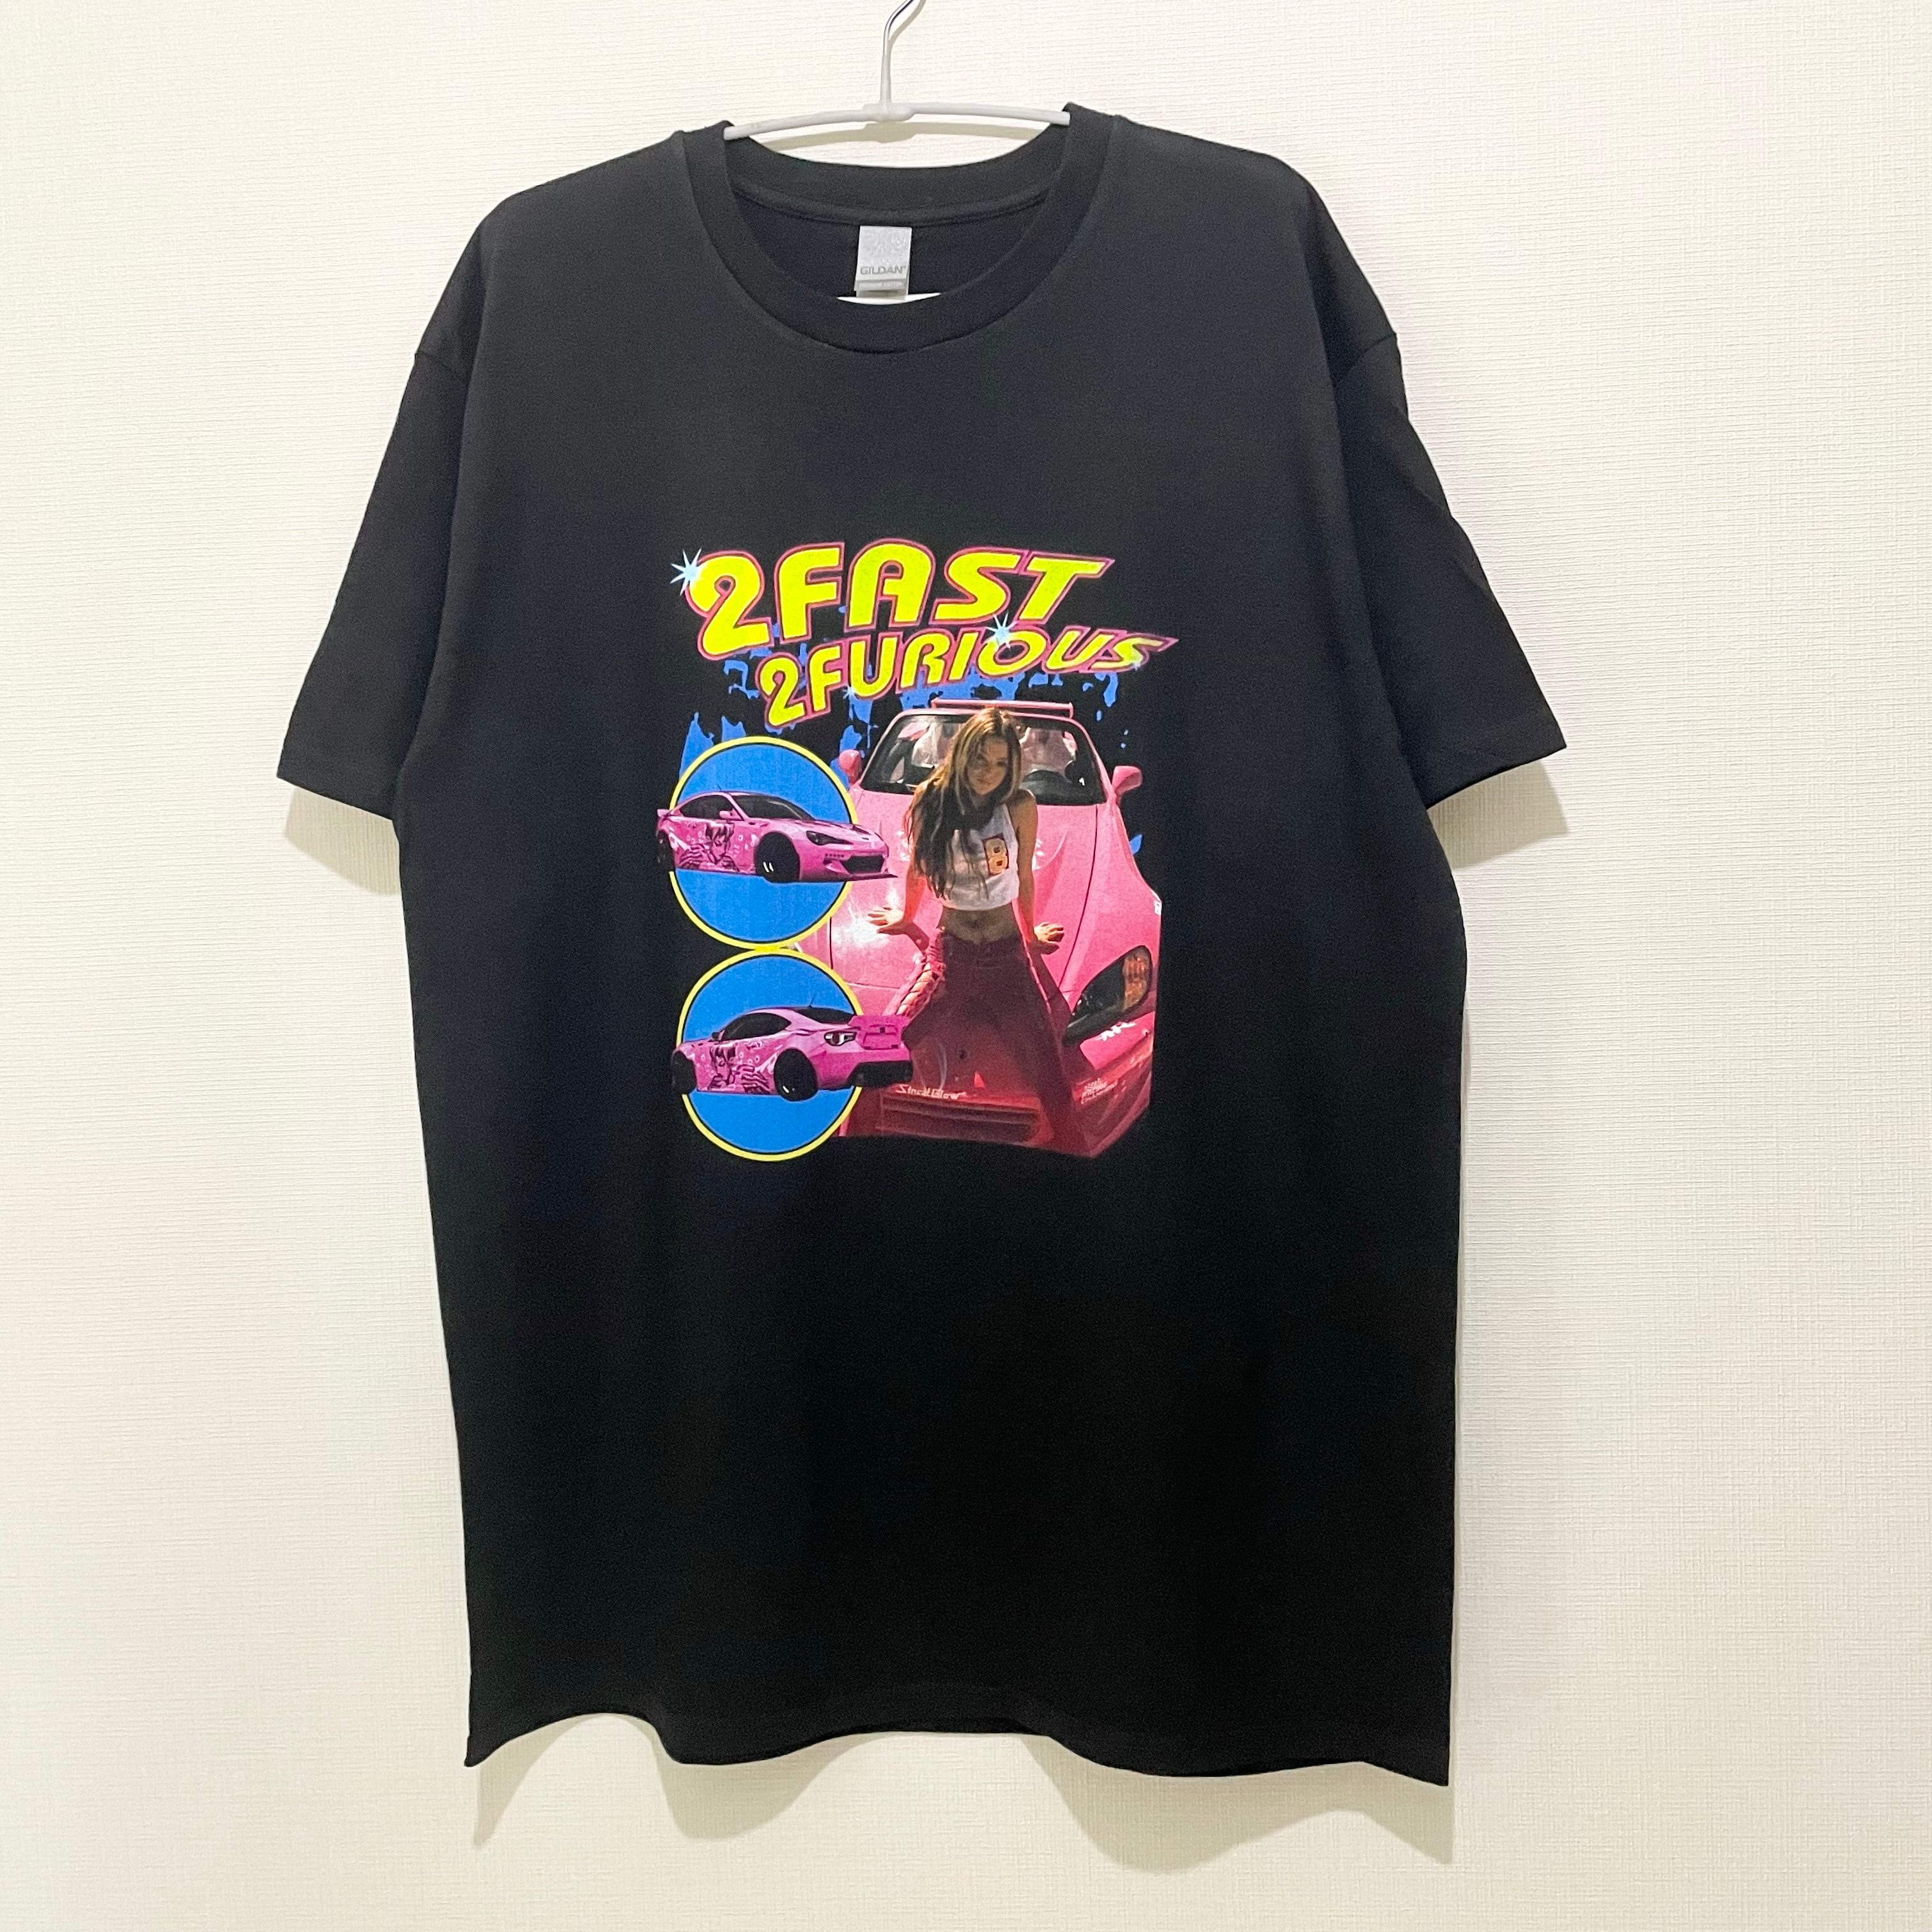 20,256円「レア」ワイルドスピード 2FAST 2FURIOUS 映画 Tシャツ L